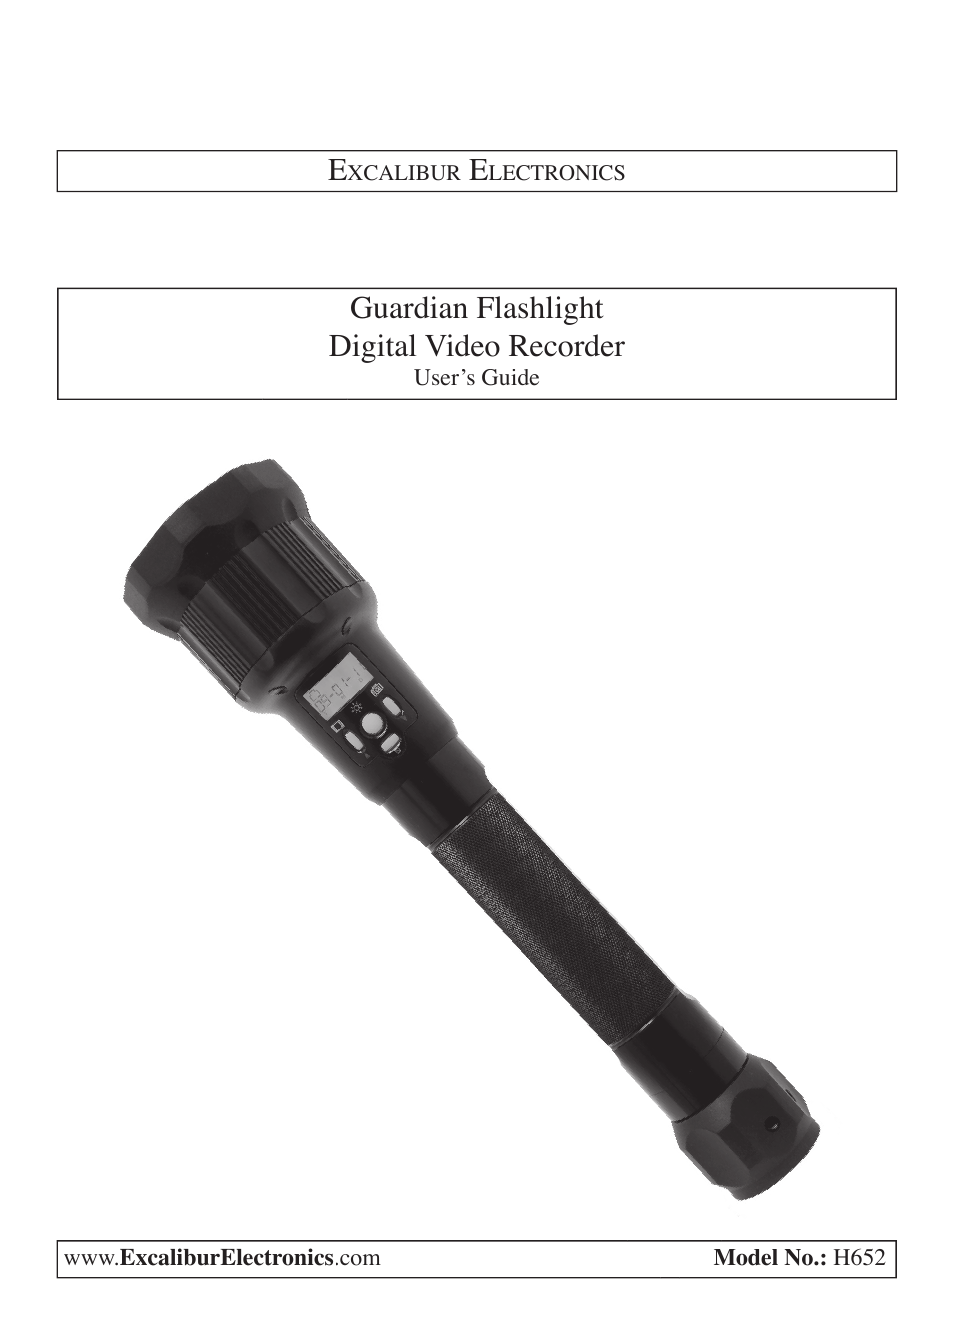 H652 Roadside Digital Video Recorder & Flashlight